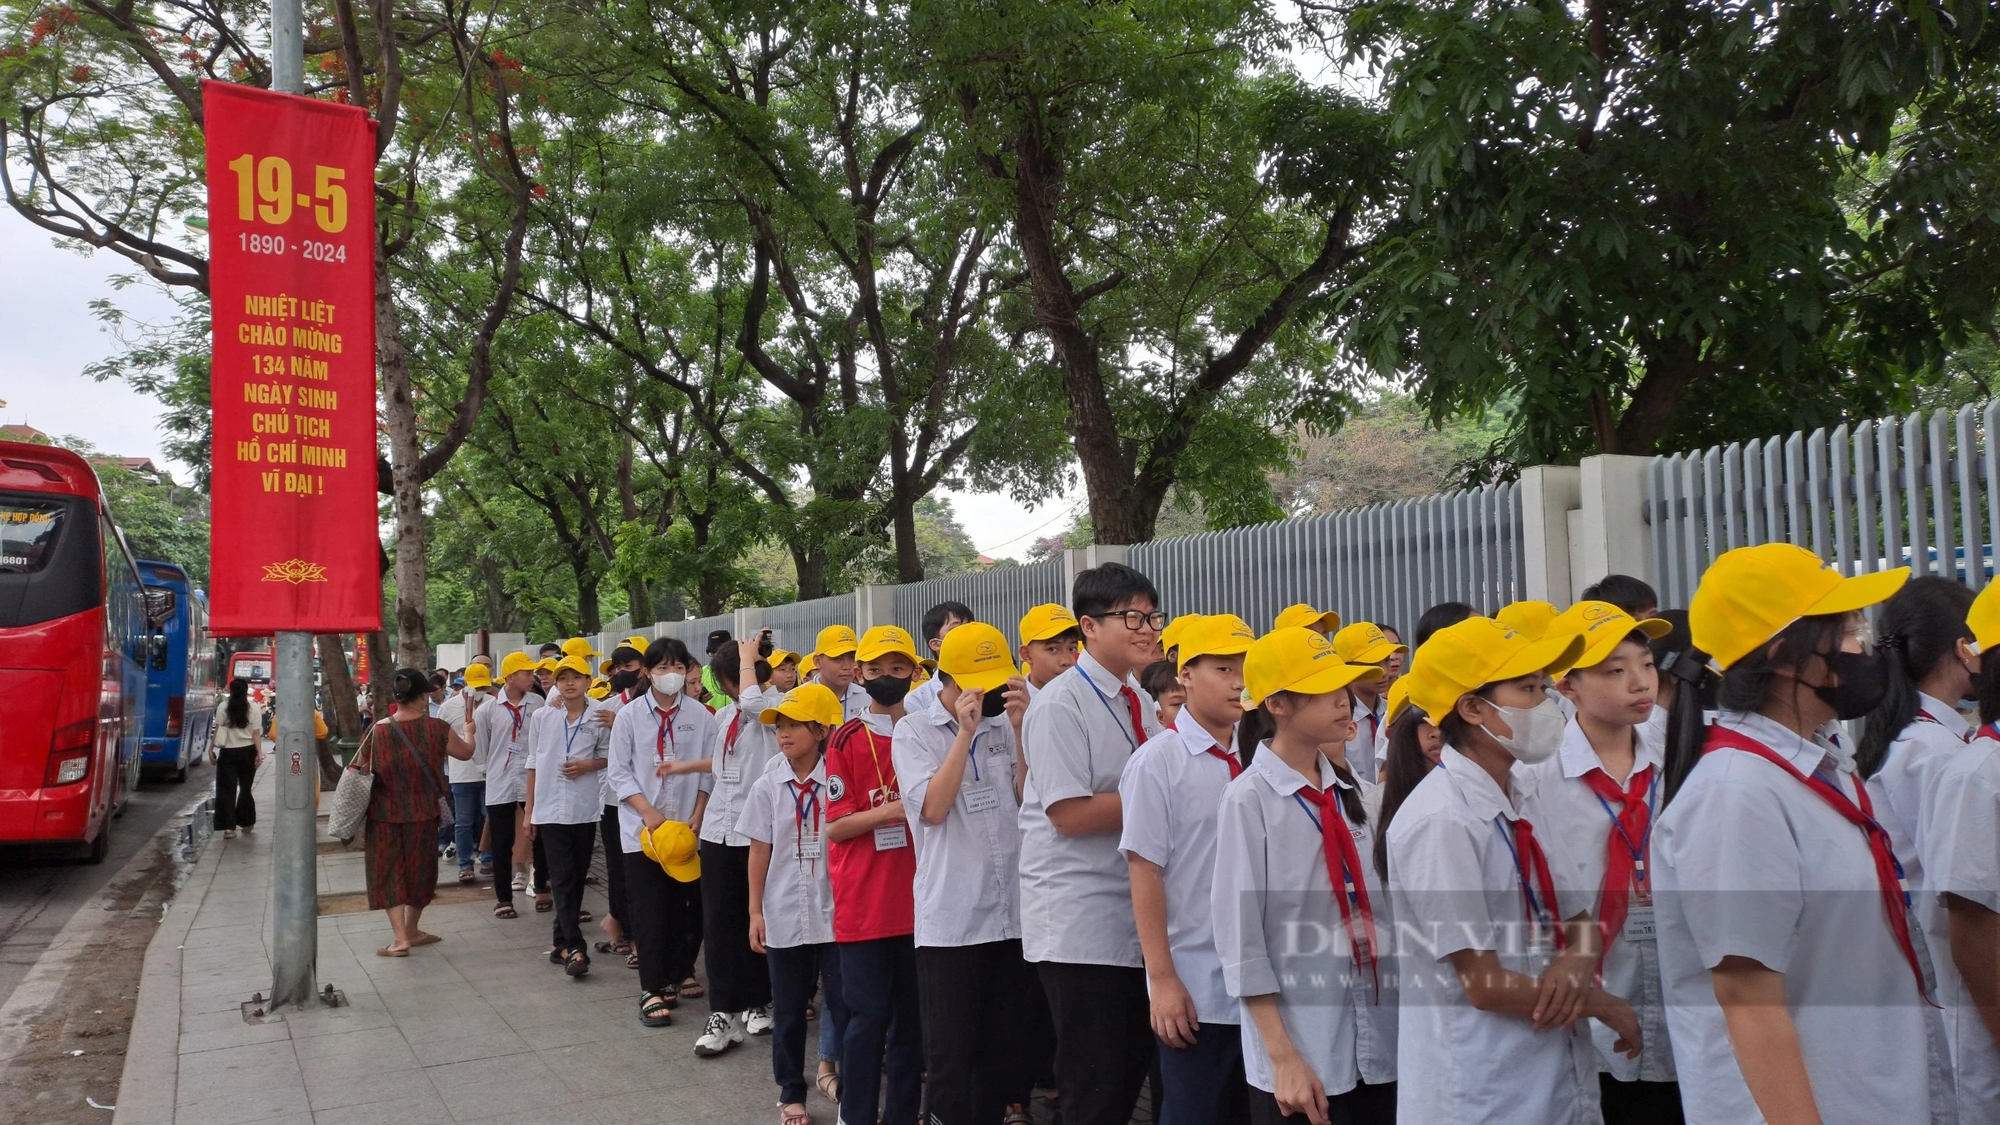 Dòng người xếp hàng vào Lăng viếng Chủ tịch Hồ Chí Minh sáng 19/5- Ảnh 2.